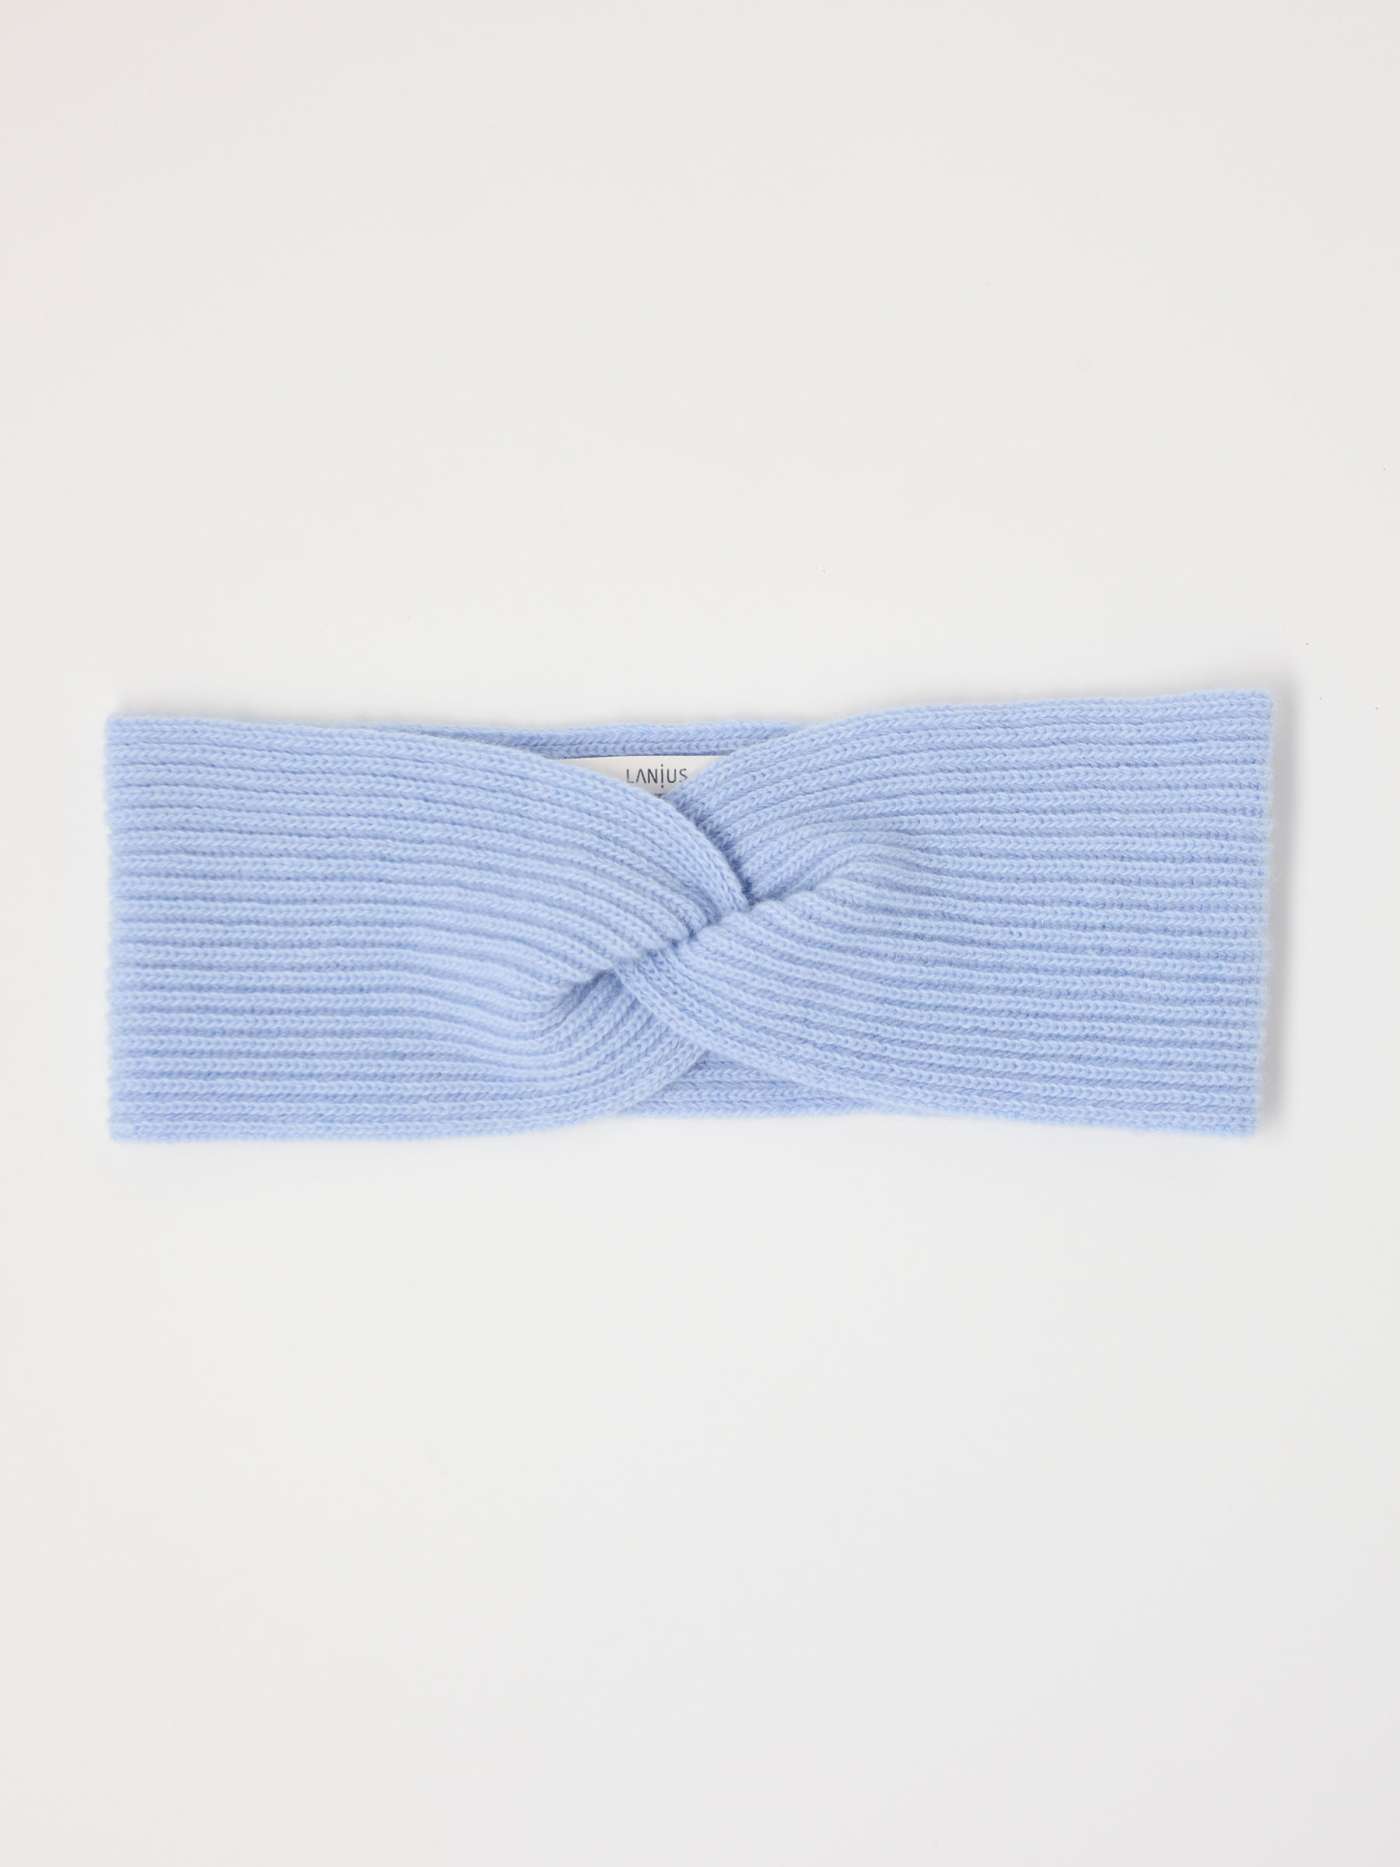 HEADBAND Made of Wool & Cashmere - Zen Blue